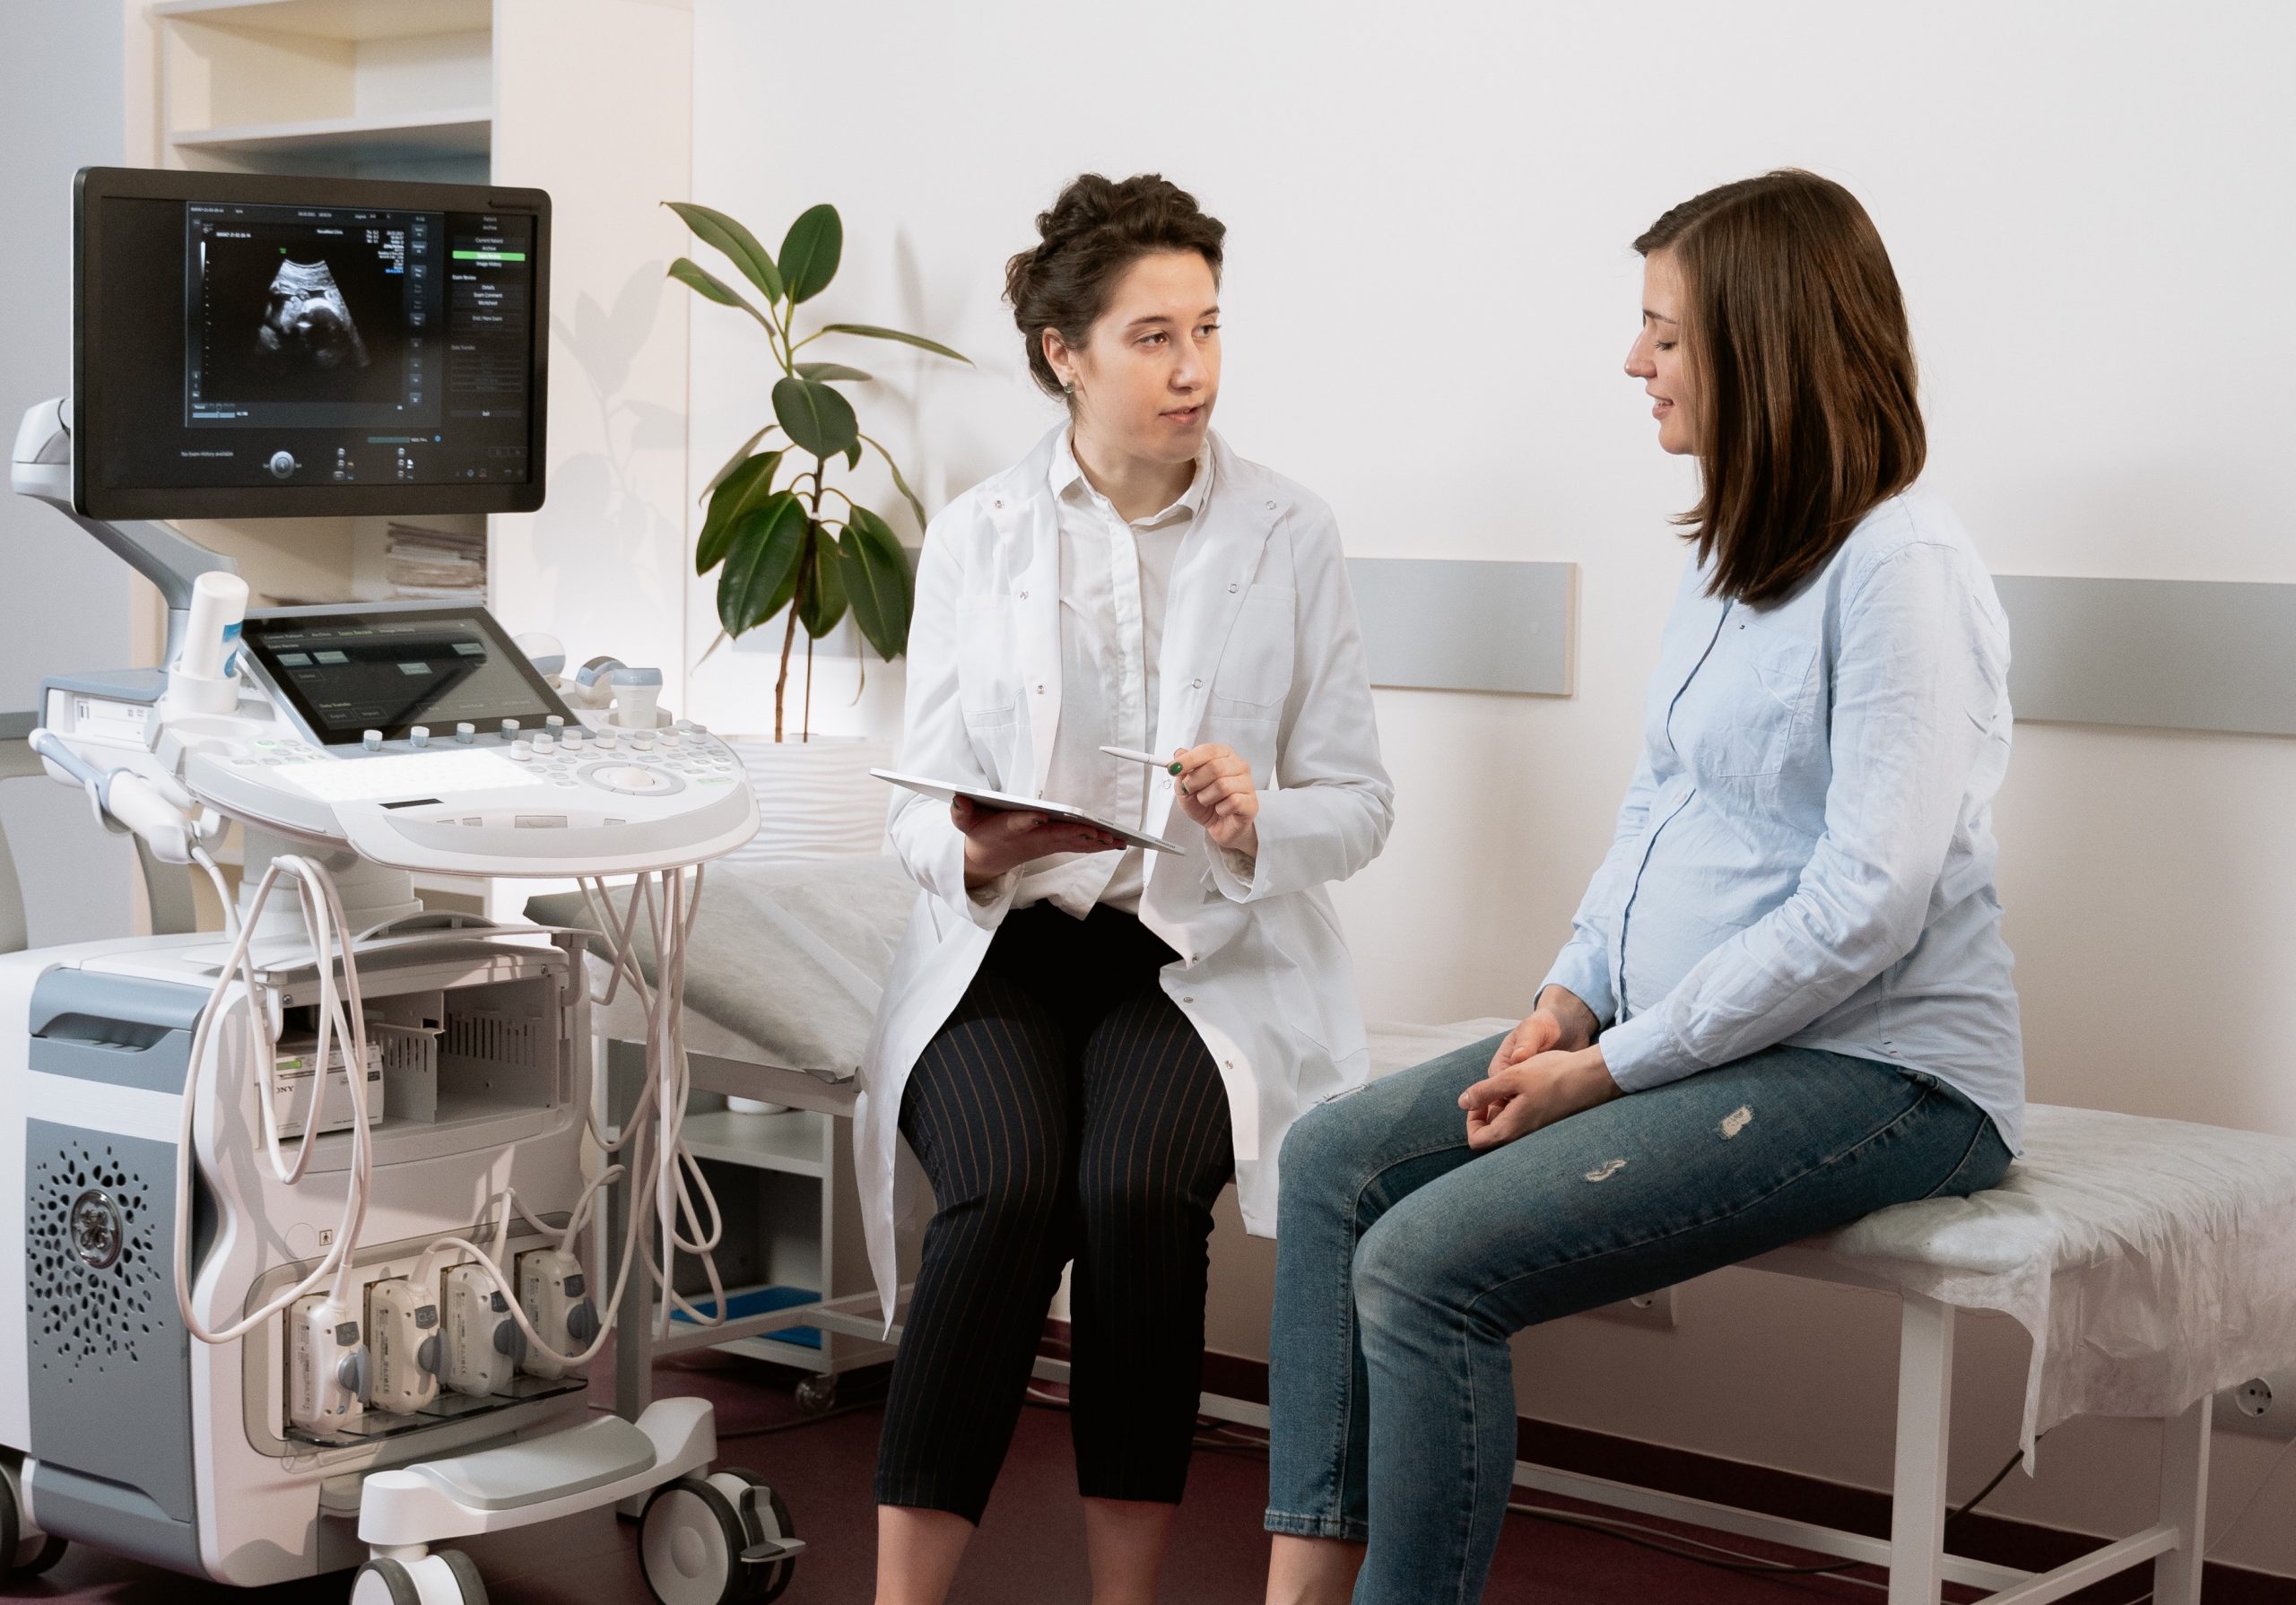 Eine Ärztin sitzt neben einer Patientin auf einer Untersuchungsliege. Sie hält ein Tablett und einen Stift und erklärt ihrer schwangeren Patientin etwas. Links neben den beiden steht ein Ultraschallgerät.